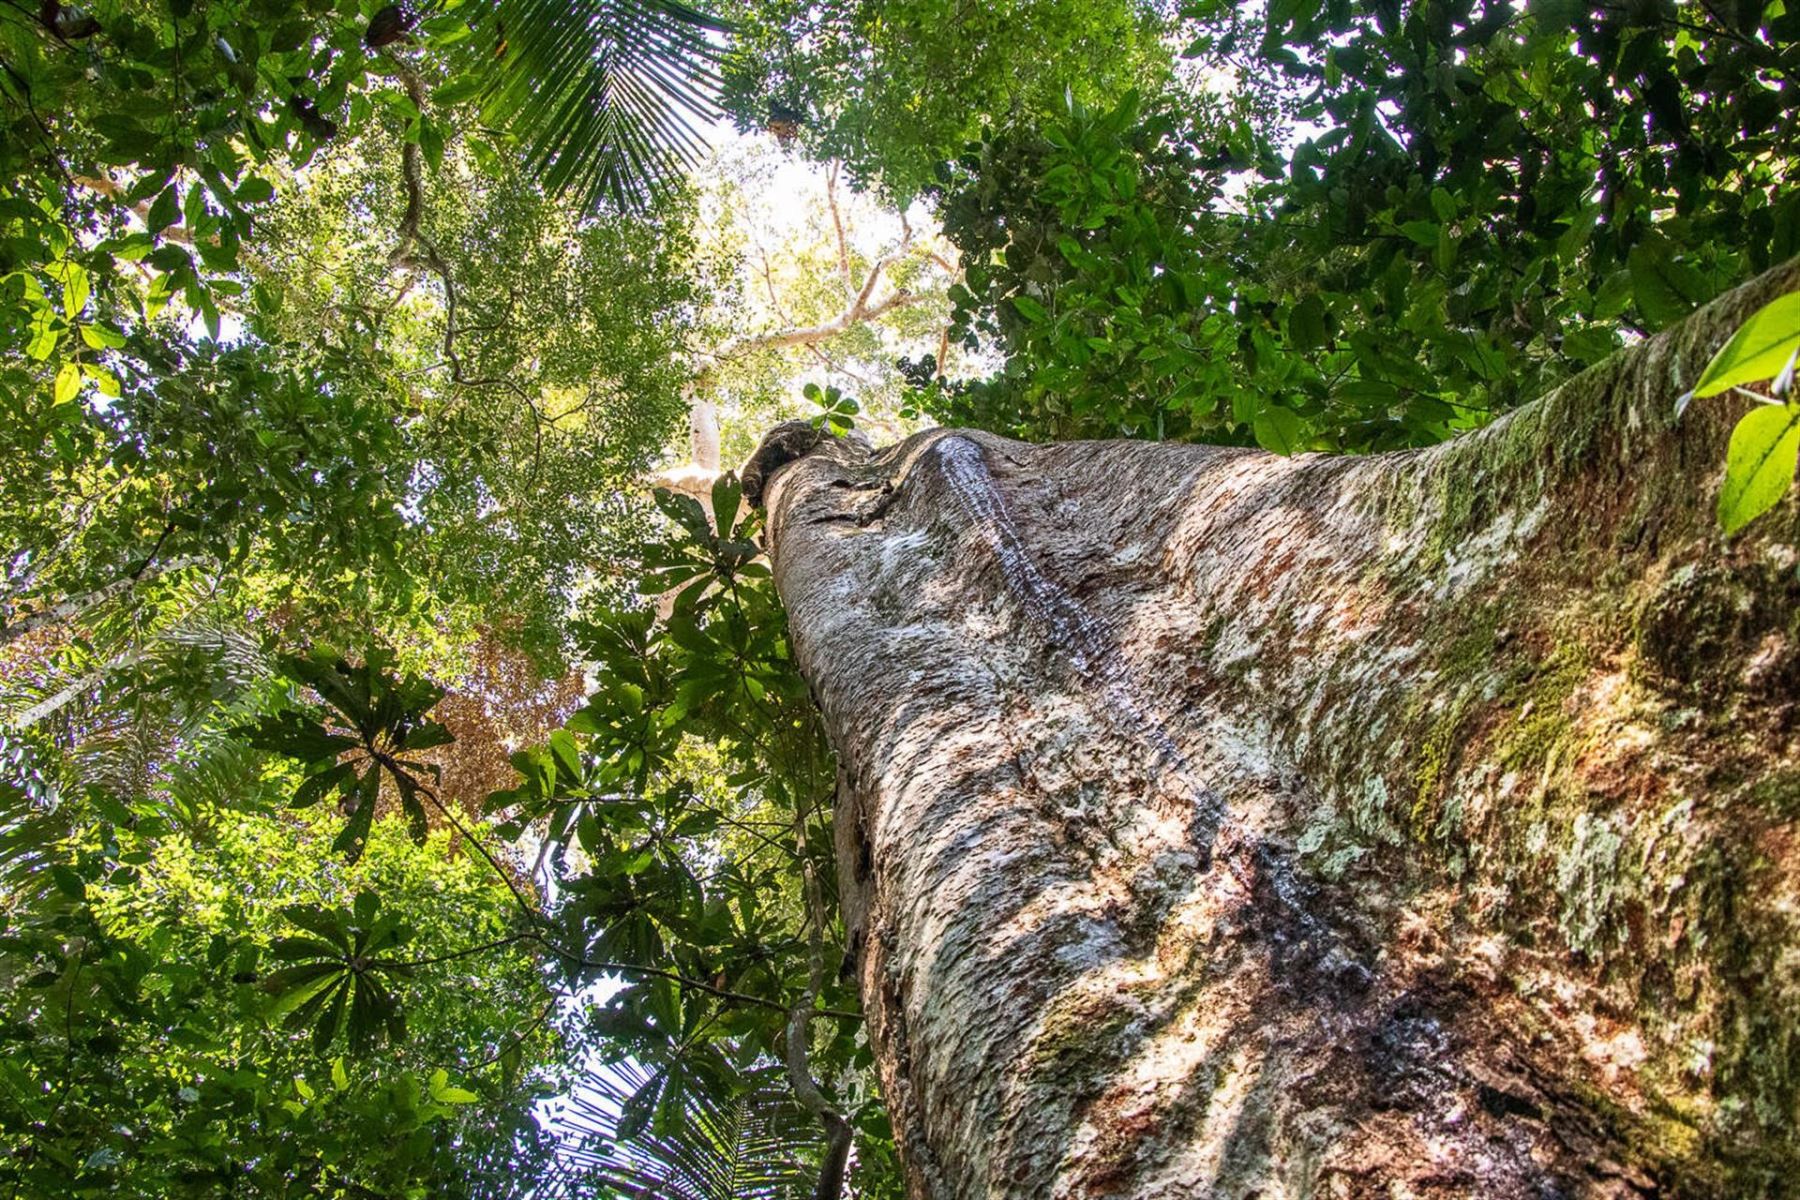 El shihuahuaco, uno de los árboles más grandes y antiguos de la Amazonía, refugio de especies como los guacayos o águilas arpías, se encuentra en peligro por la tala incontrolada, alertó la organización Arbio. Foto: EFE/ Gianella Espinosa/ ONG Arbio